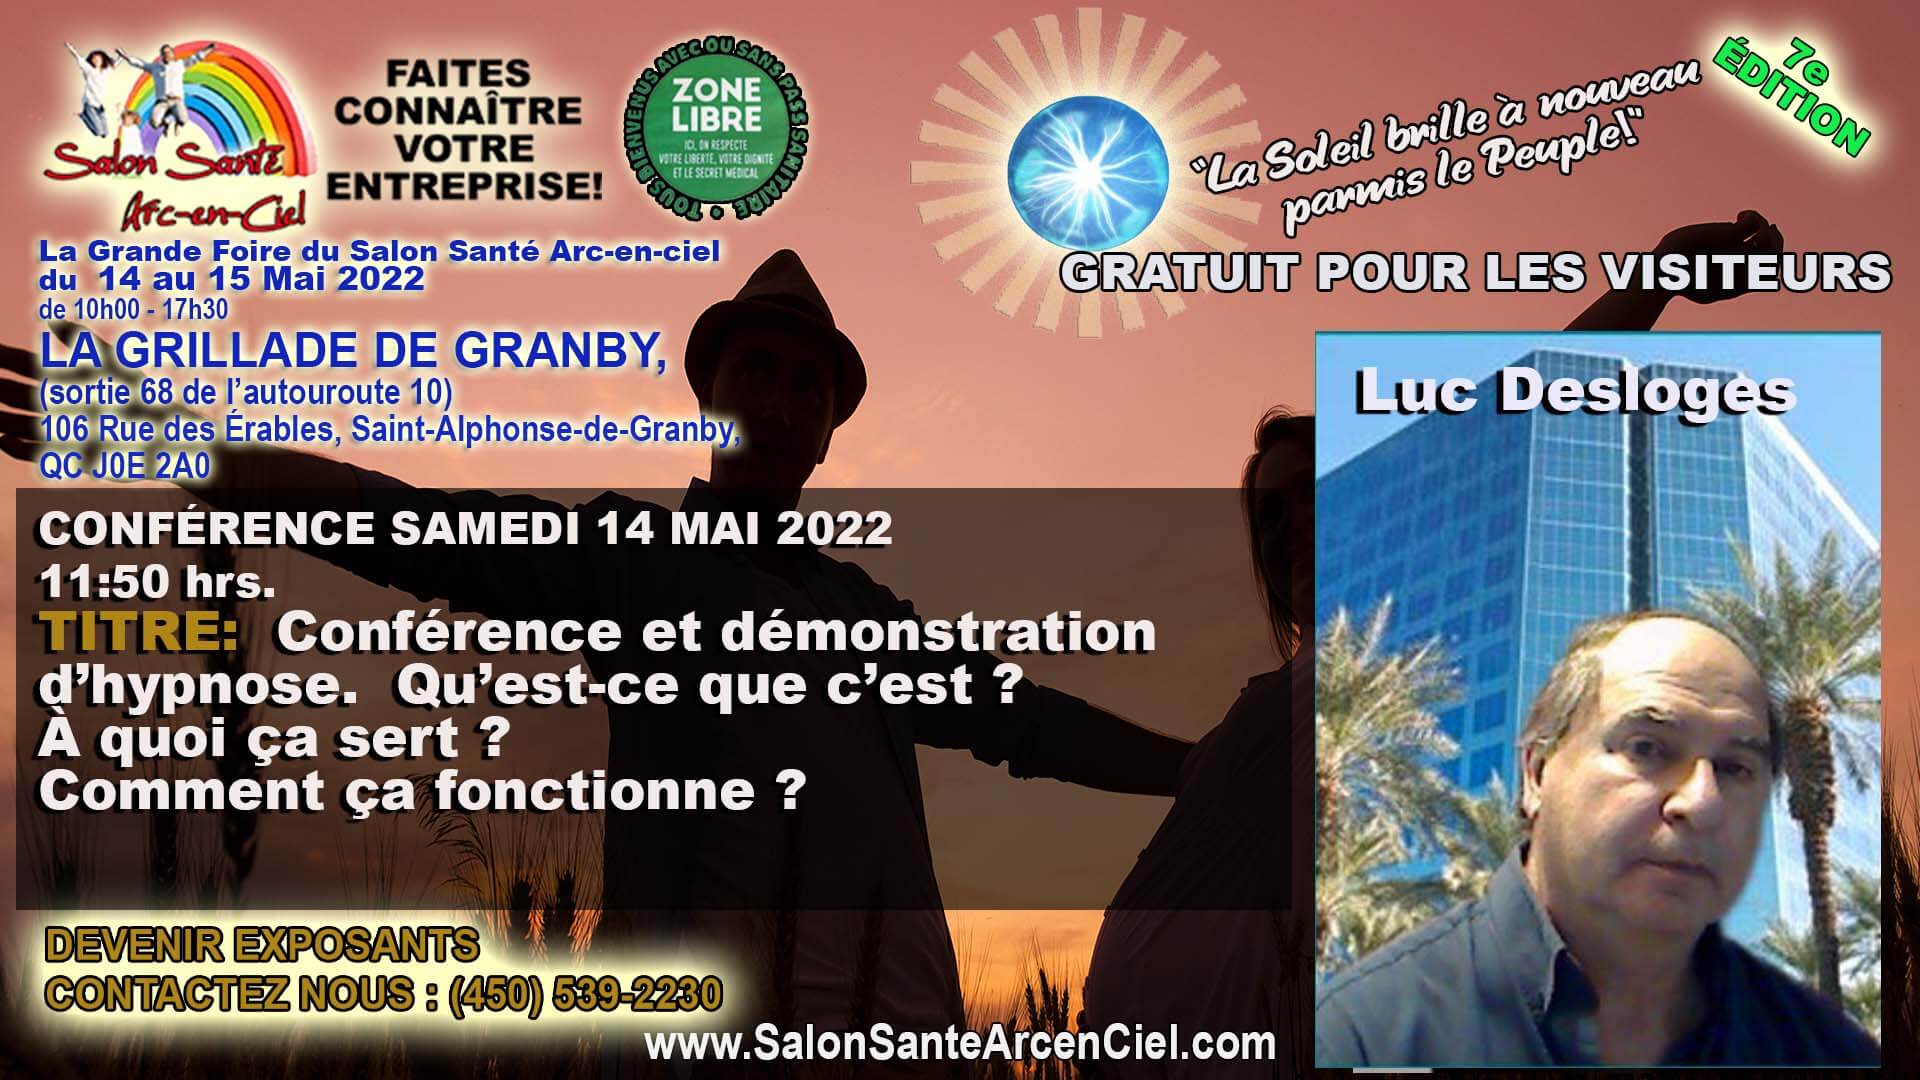 CONFERENCE 14 mai Evenements no 18 11 50hrs Luc Desloges 